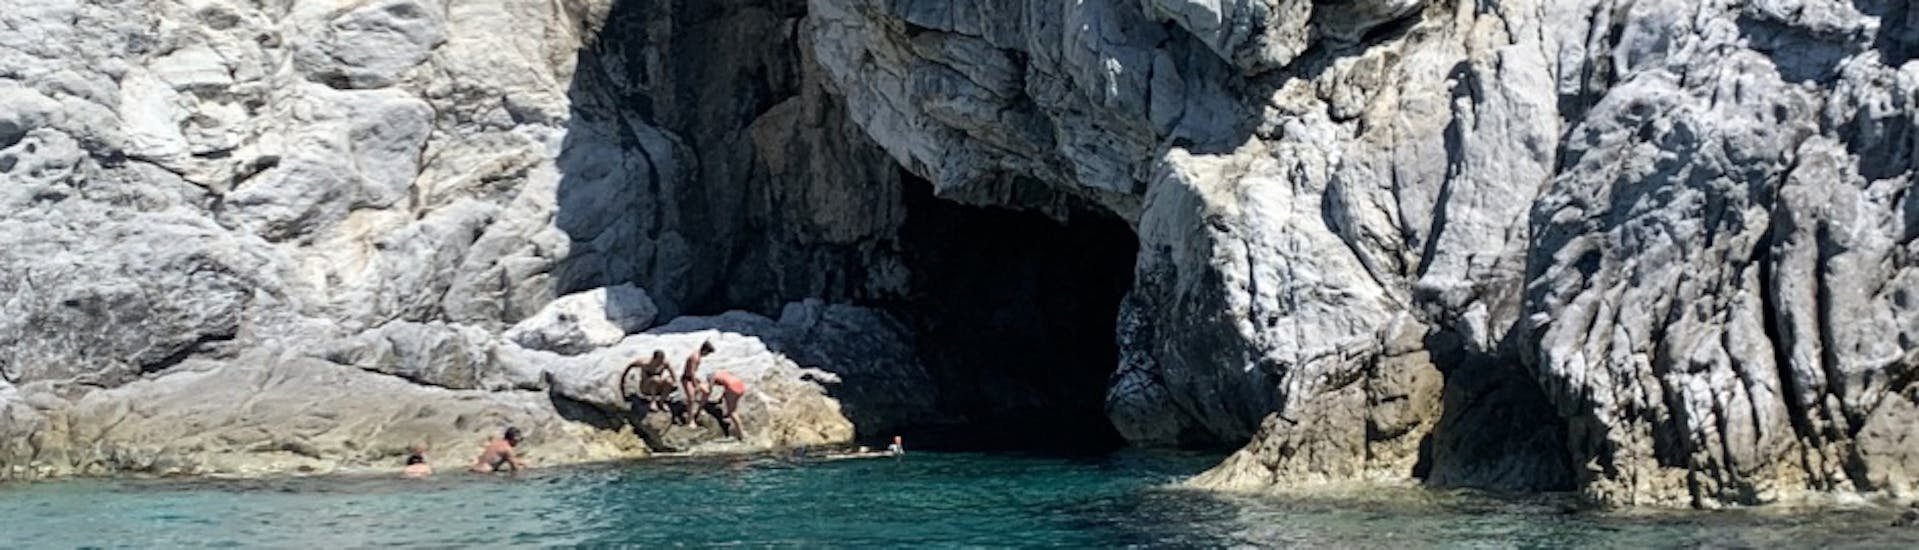 Vue de la Grotte Bleue pendant notre balade en bateau privé au sud d’Elba avec Baiarda Dive Boat Excursions Elba.